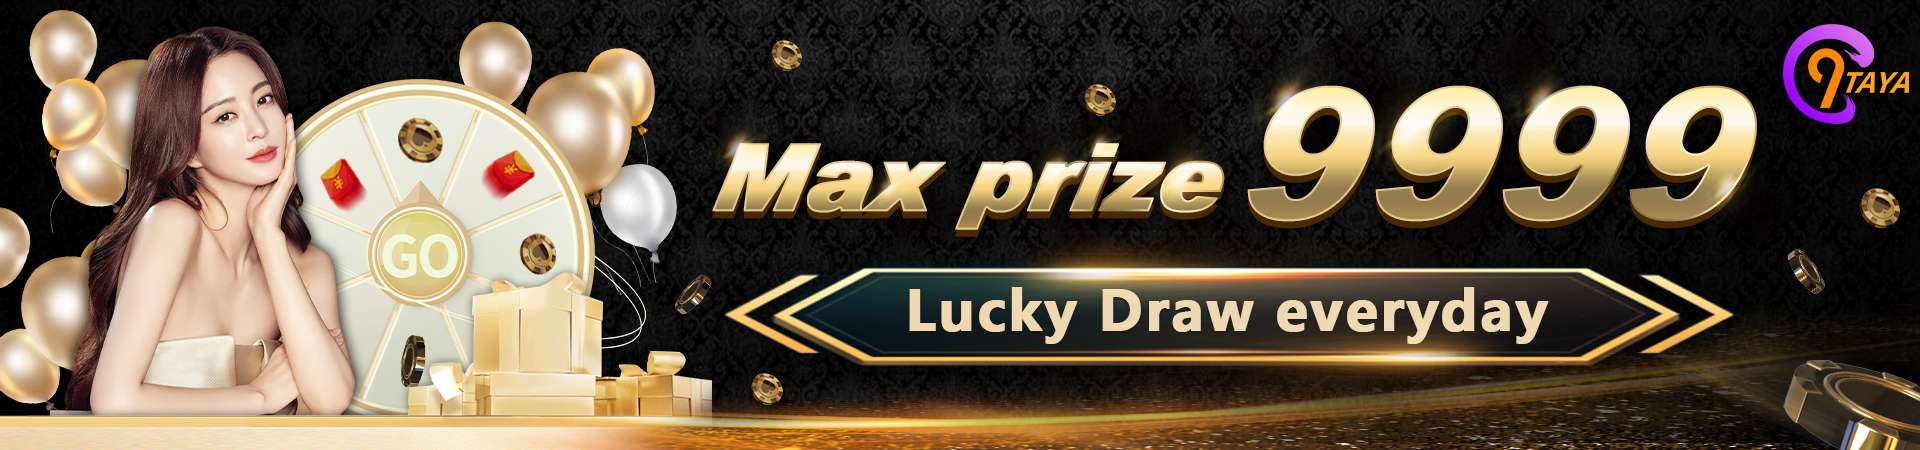 C9taya Max Prize